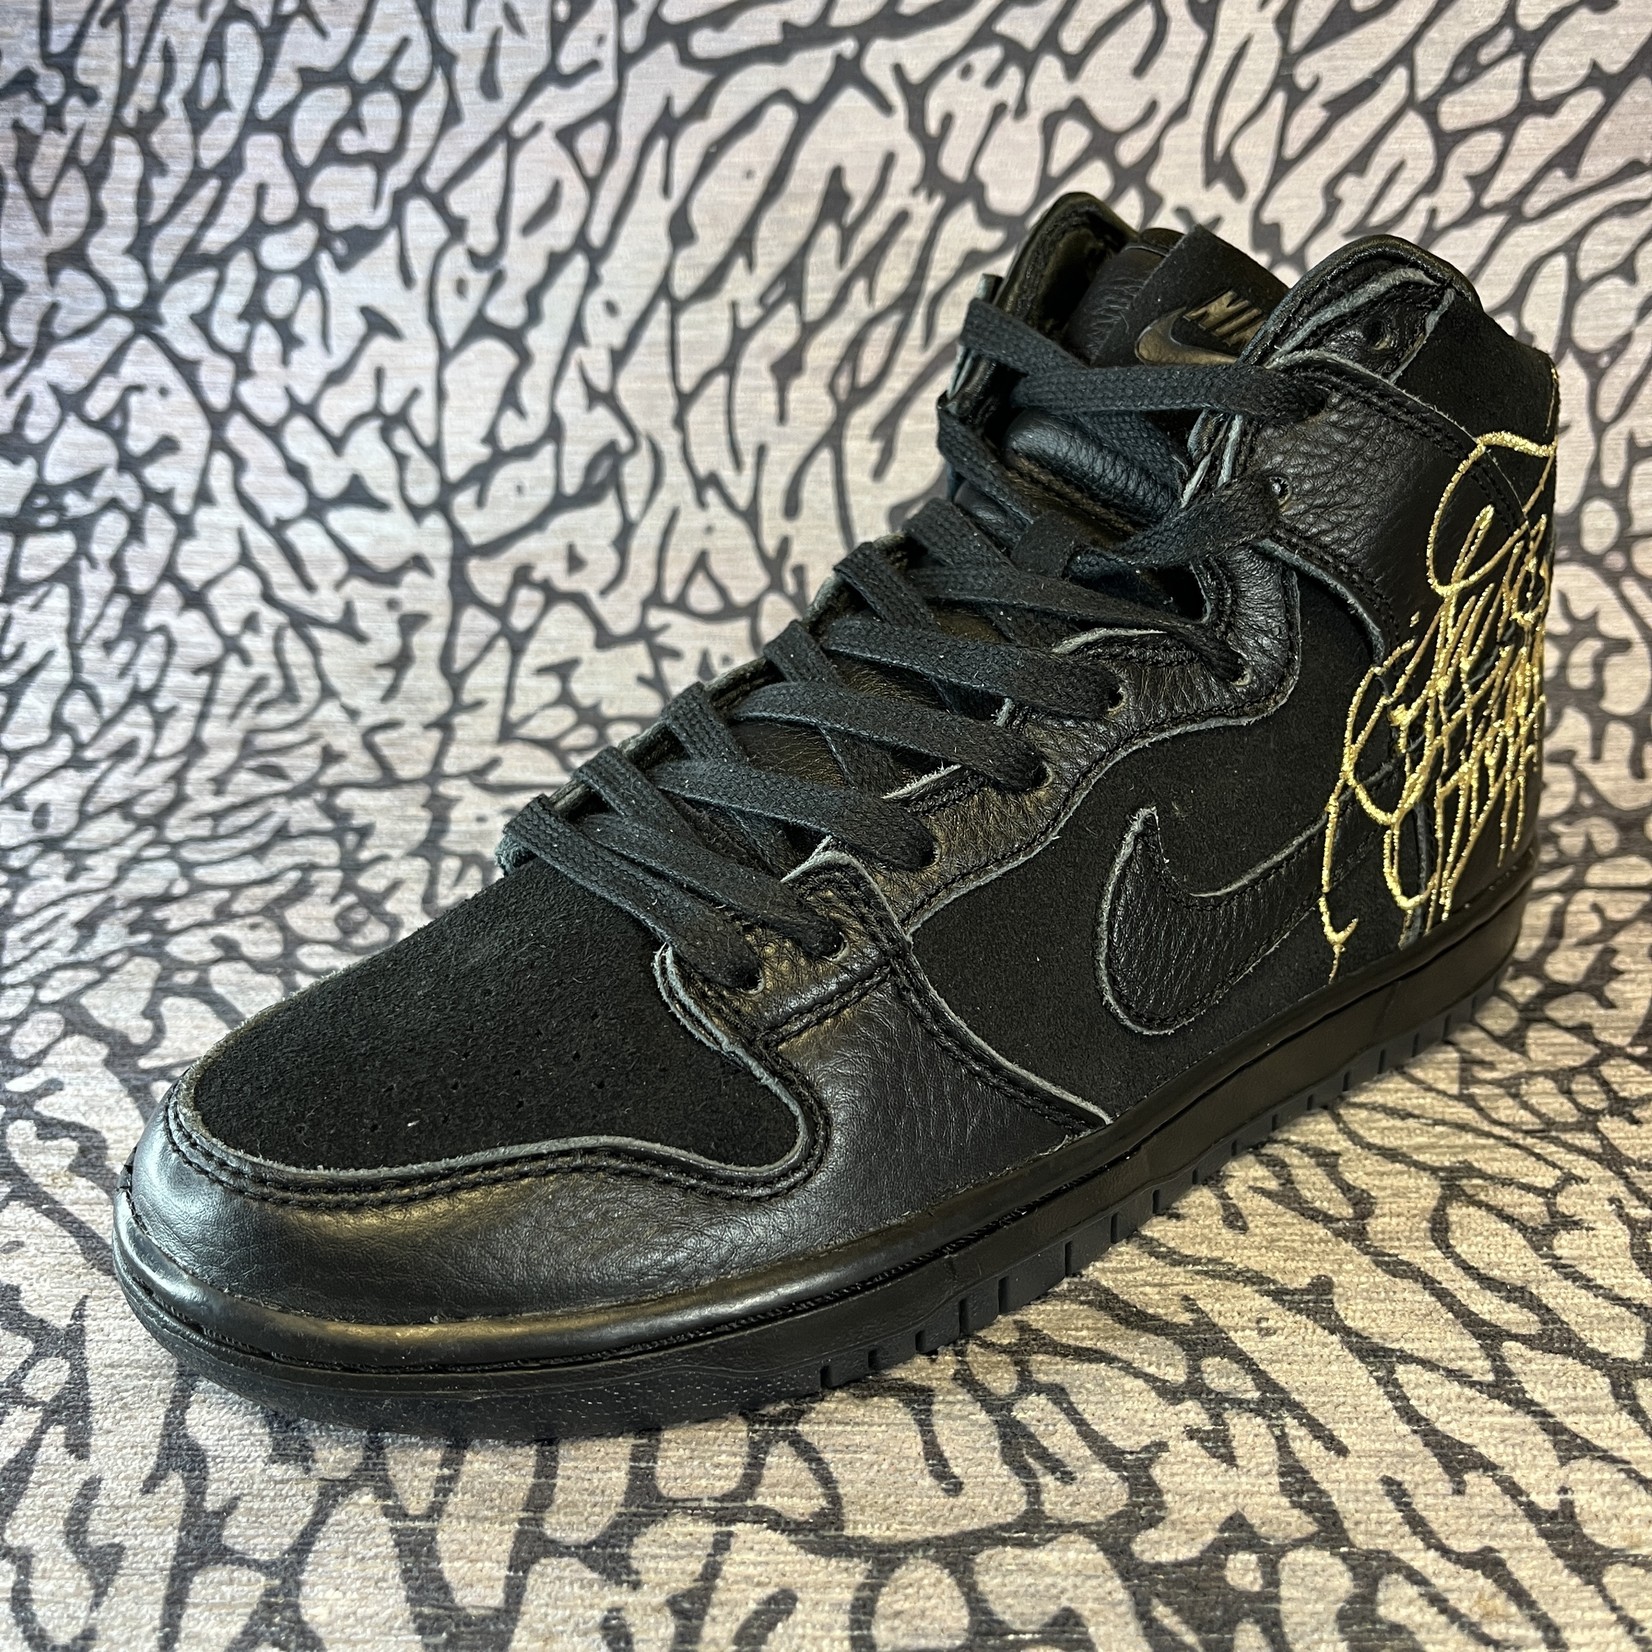 Nike SB Nike SB Dunk High FAUST Black Gold - Lavish Life Sneakers